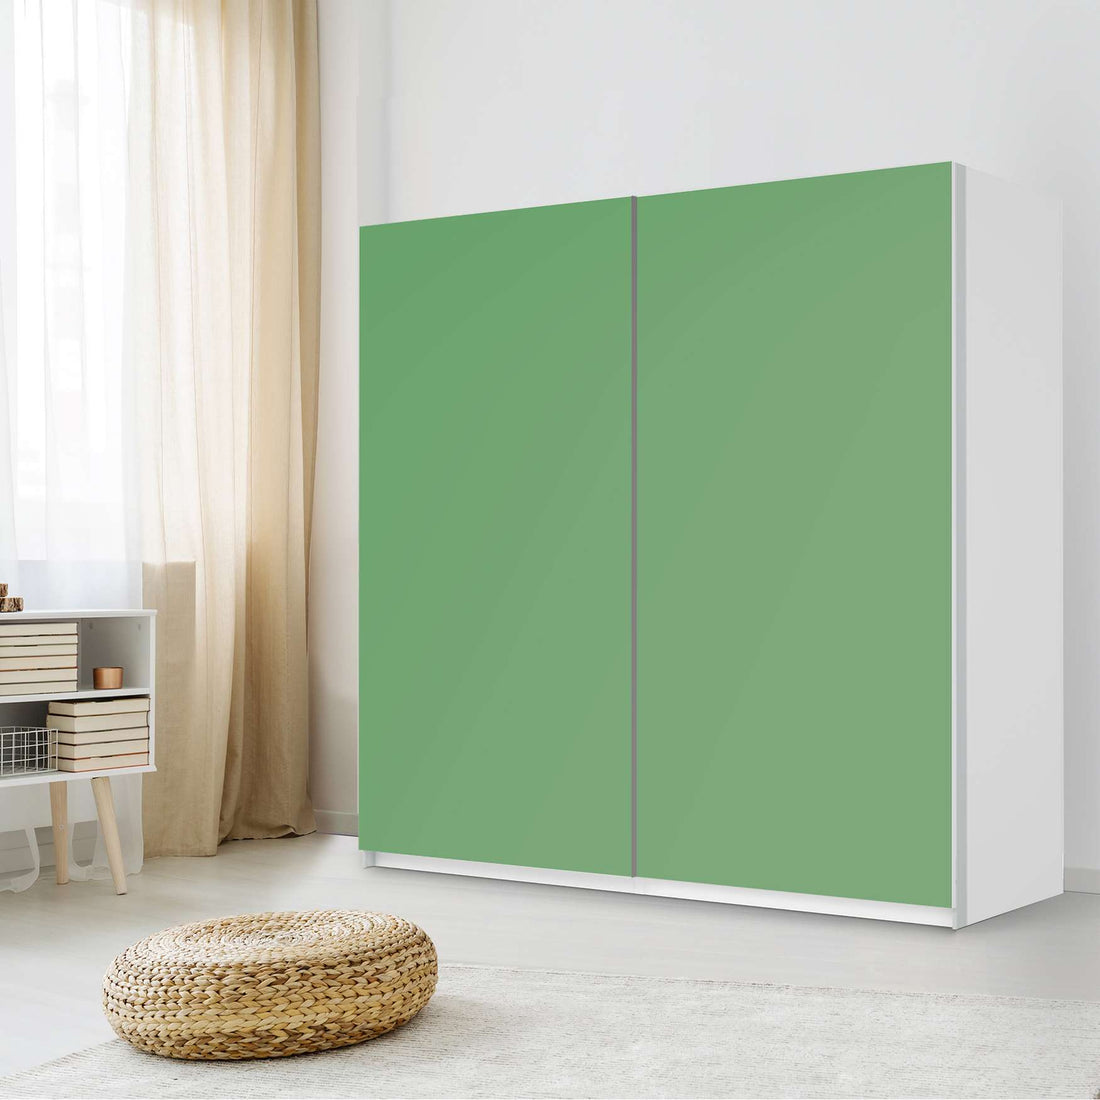 Möbel Klebefolie Grün Light - IKEA Pax Schrank 201 cm Höhe - Schiebetür - Schlafzimmer